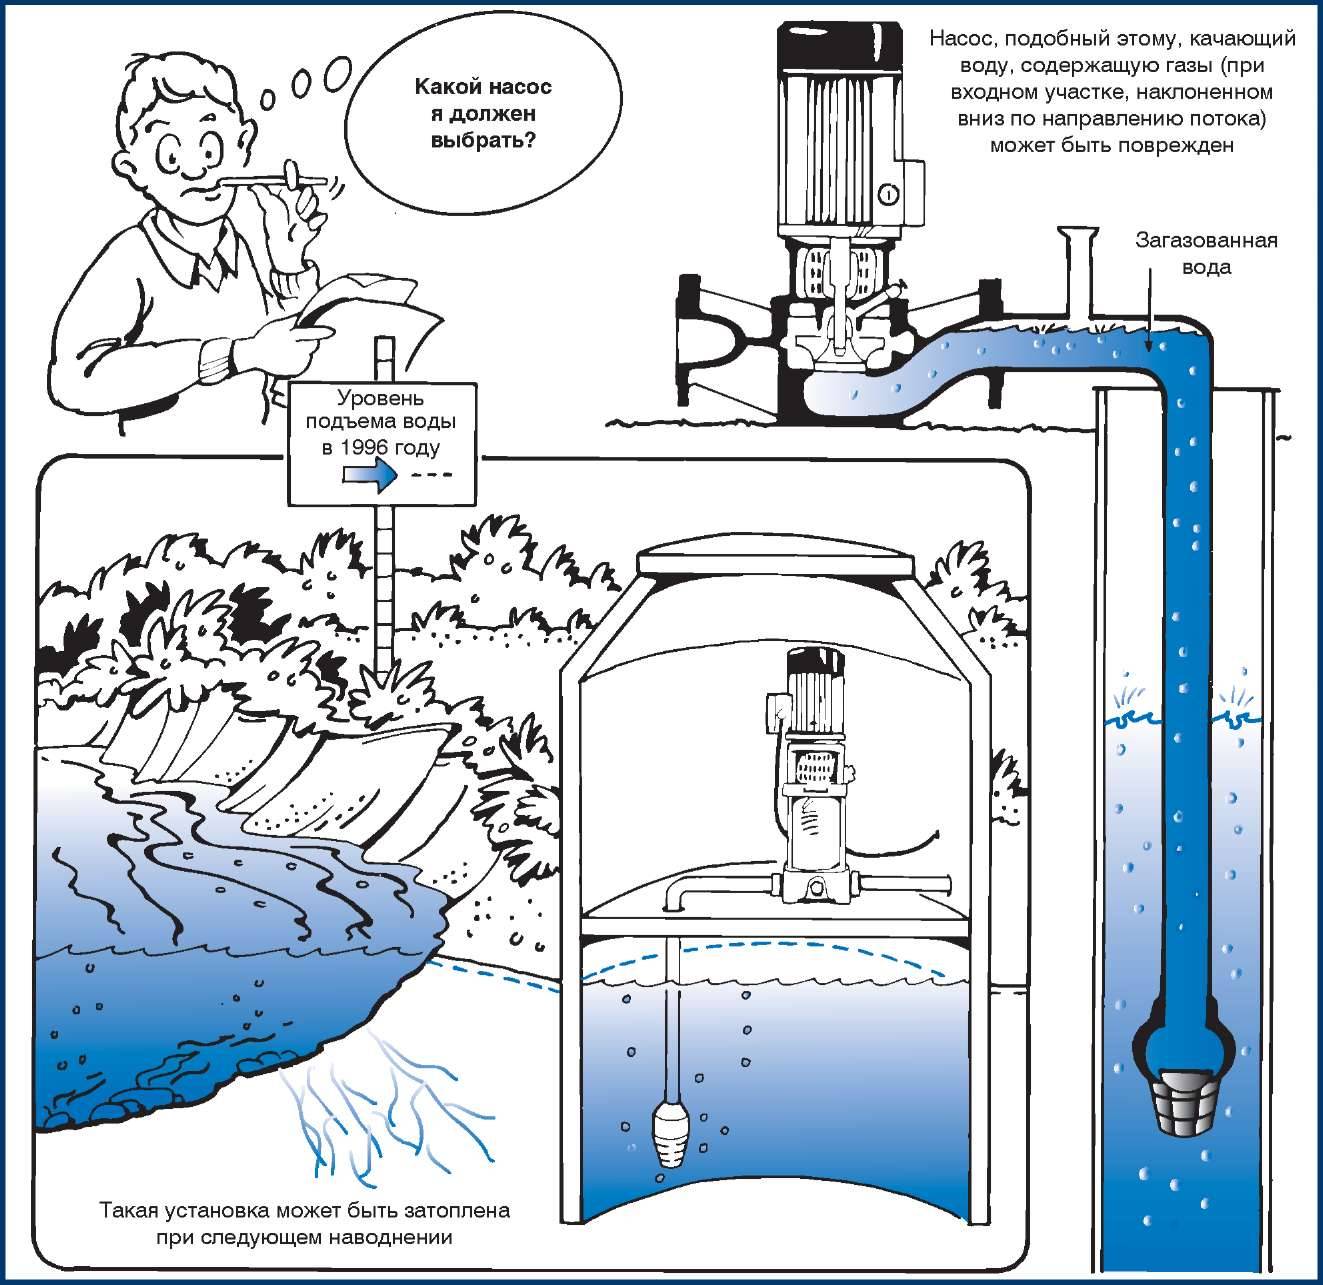 Как определить подъем воды